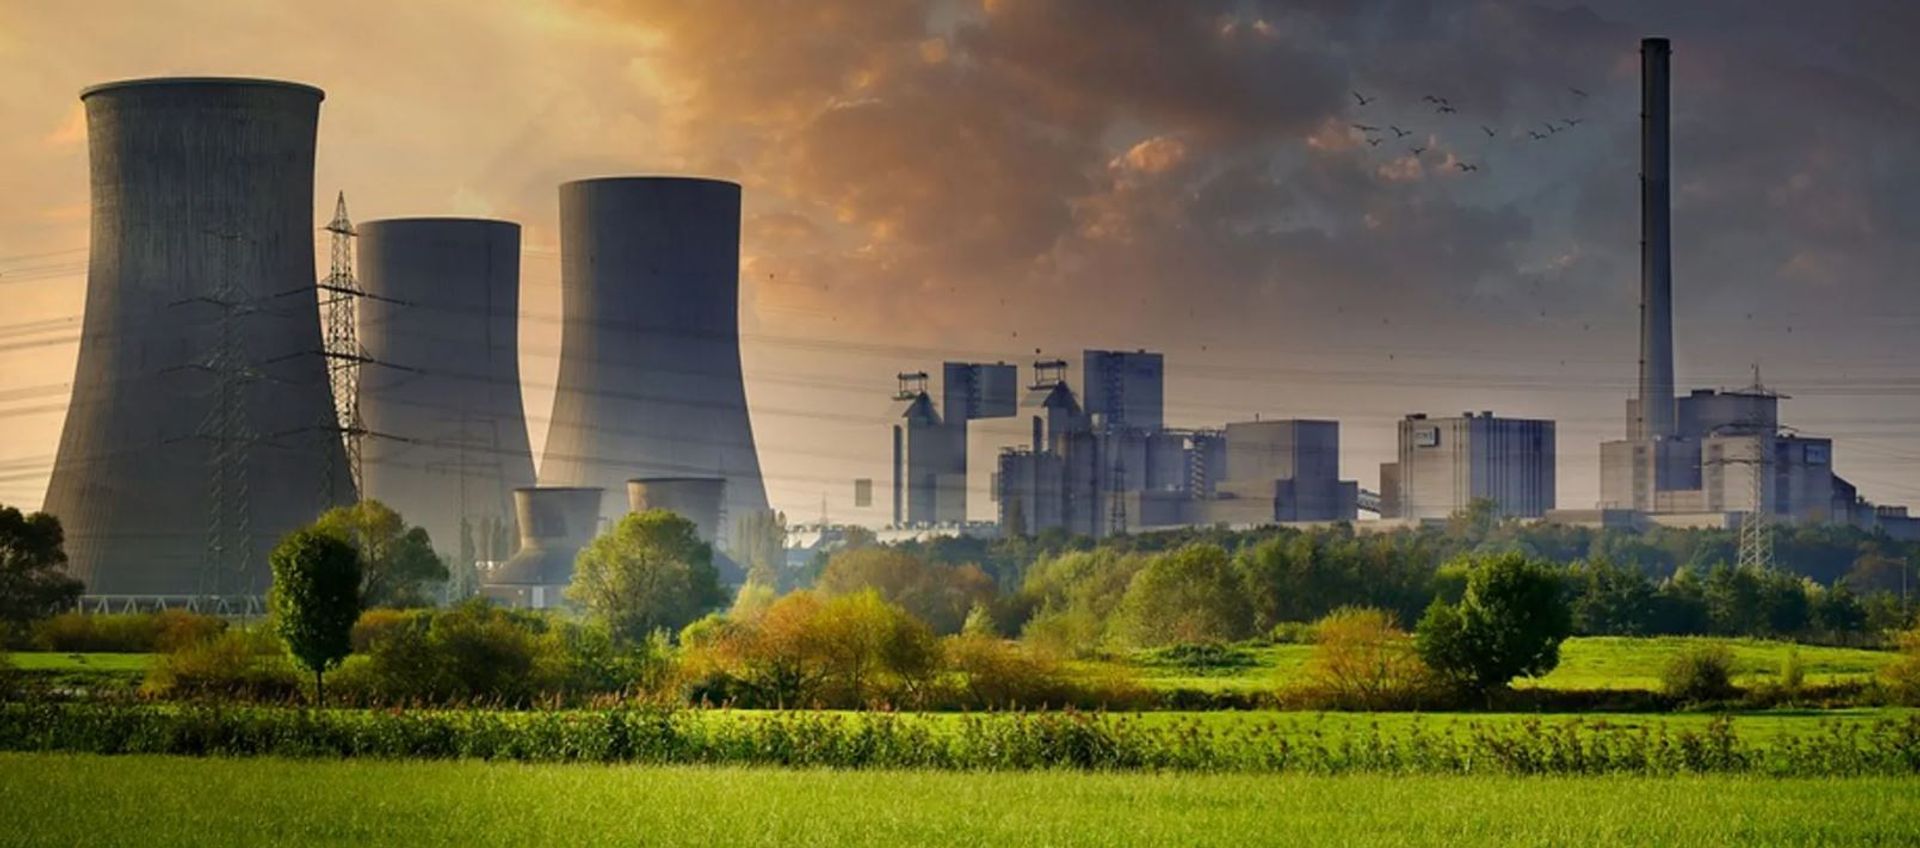 Kolejny rekord – niemal 90% Polaków za budową elektrowni jądrowych w Polsce